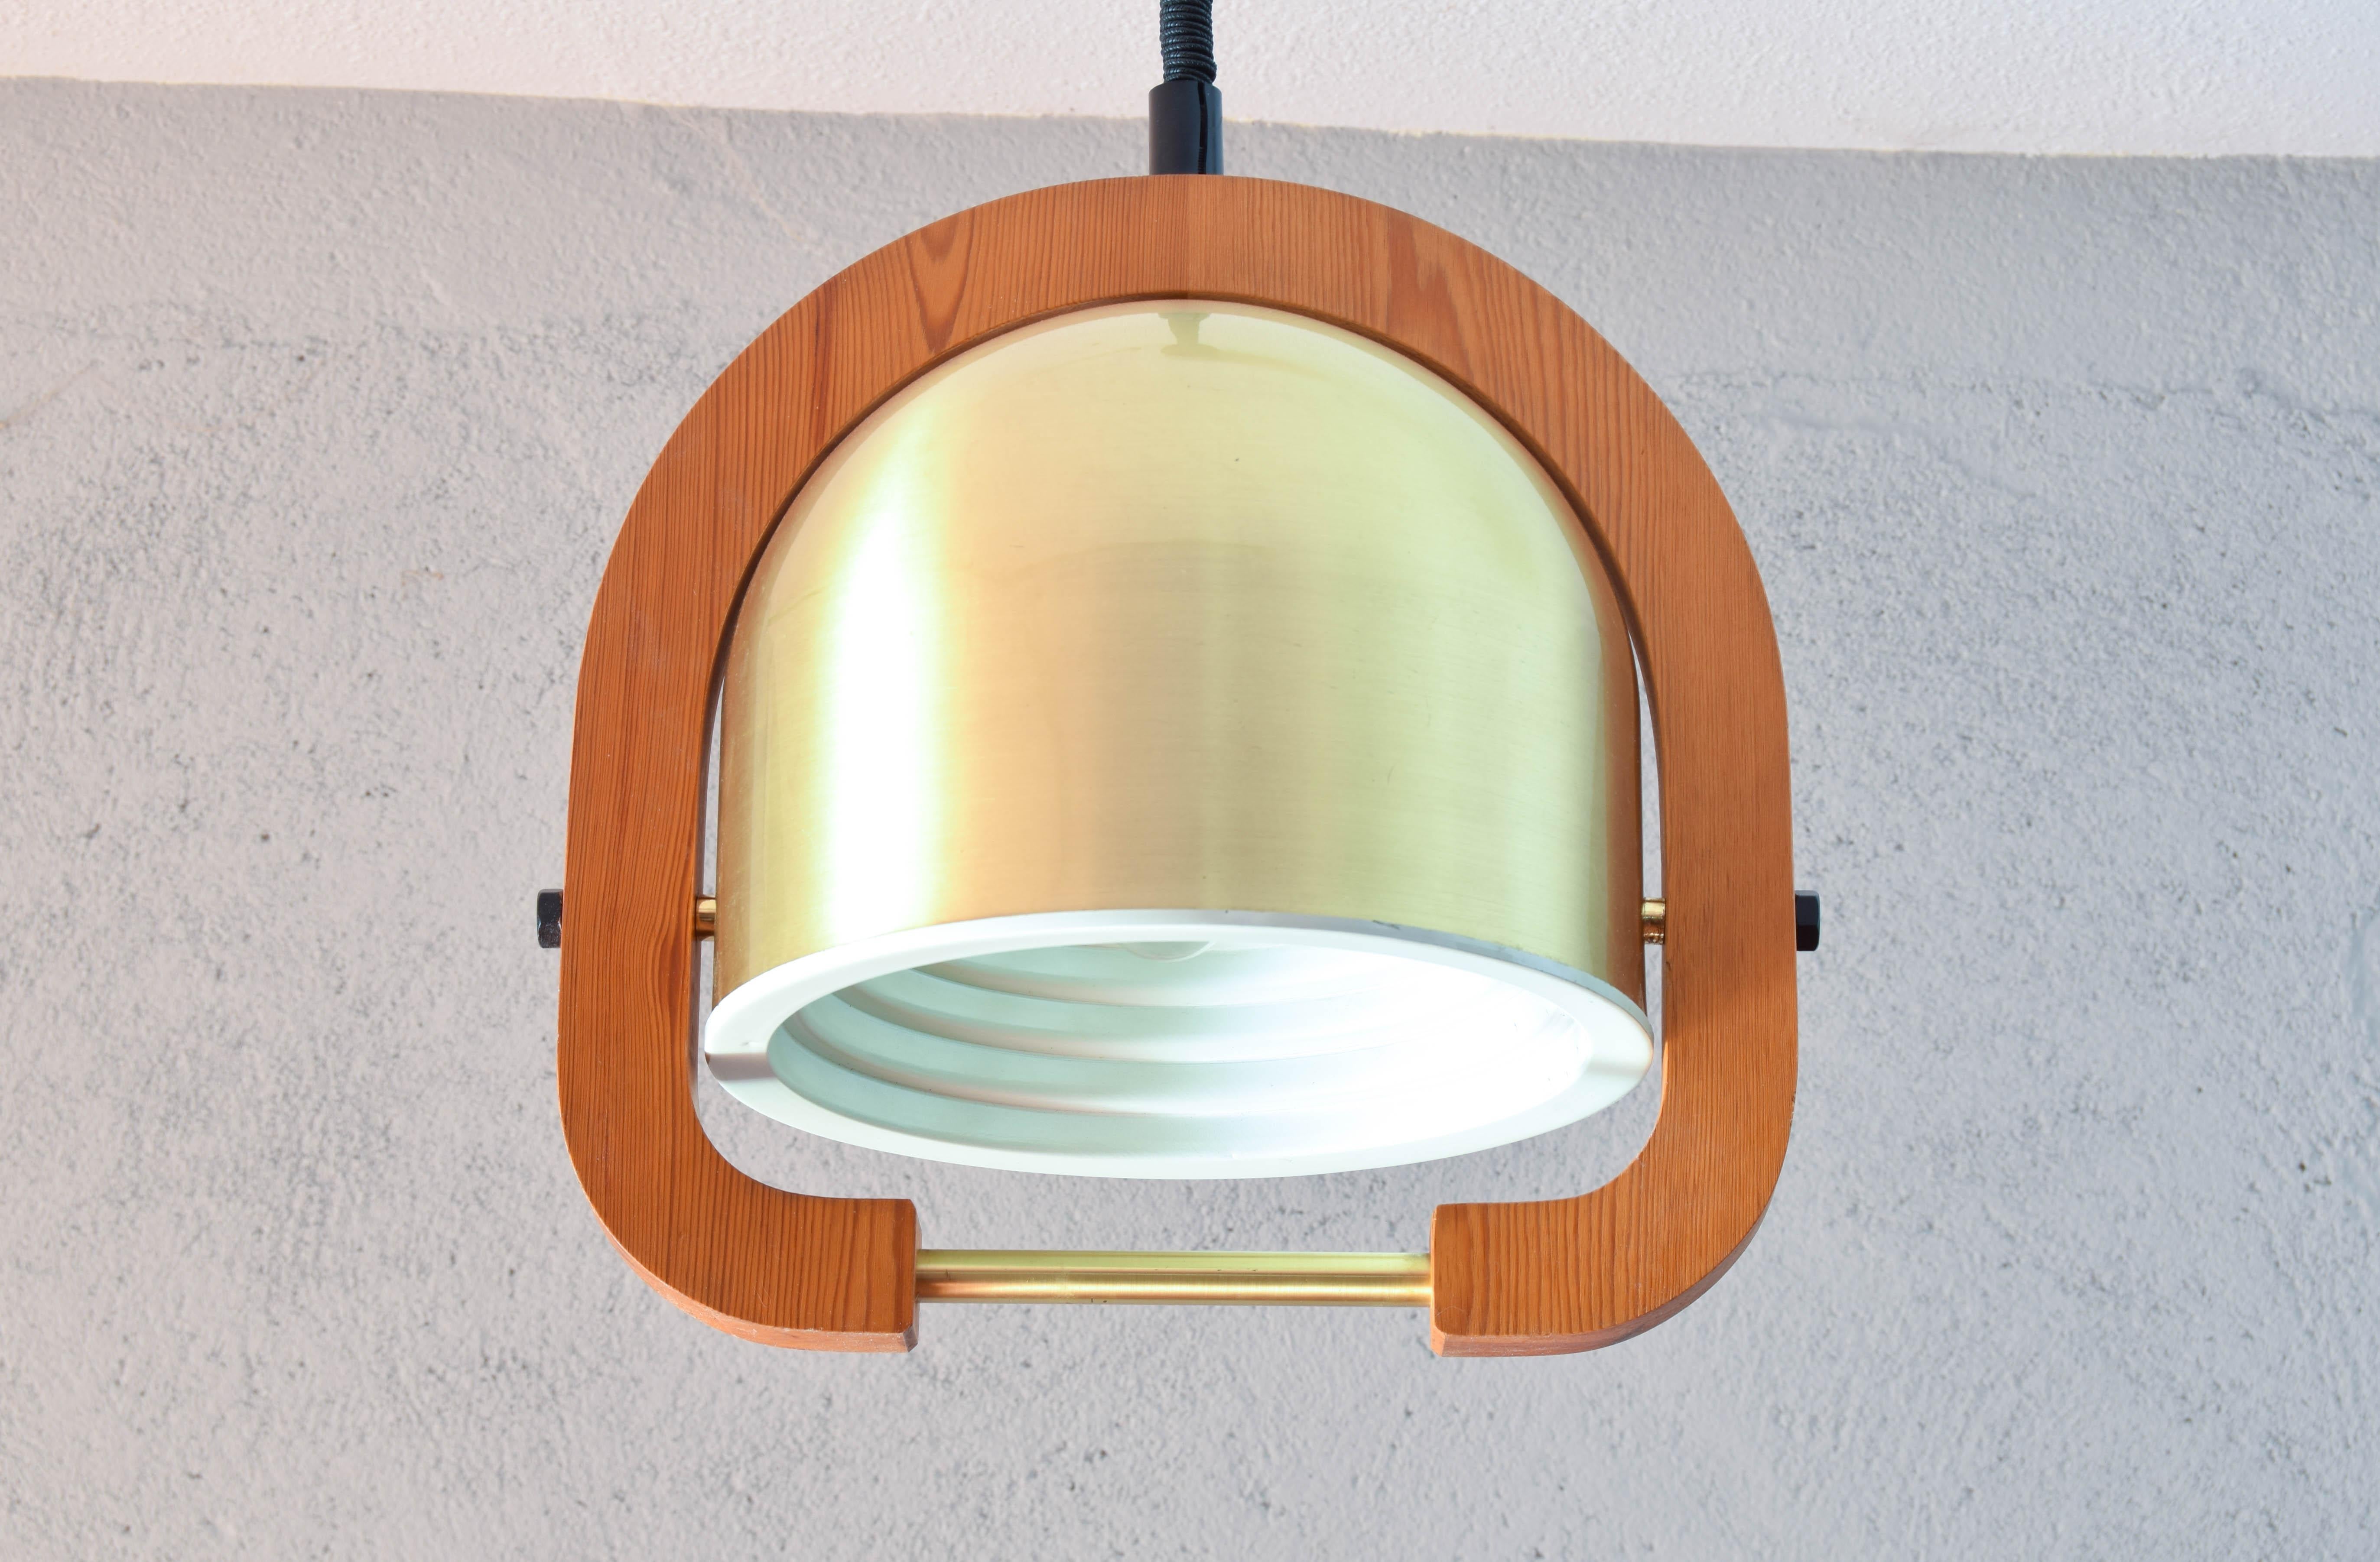 Belle lampe suspendue réglable en hauteur.
Fabriqué en Italie dans les années 1970, il est composé d'un œil en laiton et d'une structure en chêne.
Pièce de style moderne italien aussi belle que rare.
Comme on peut le voir sur les images, il présente